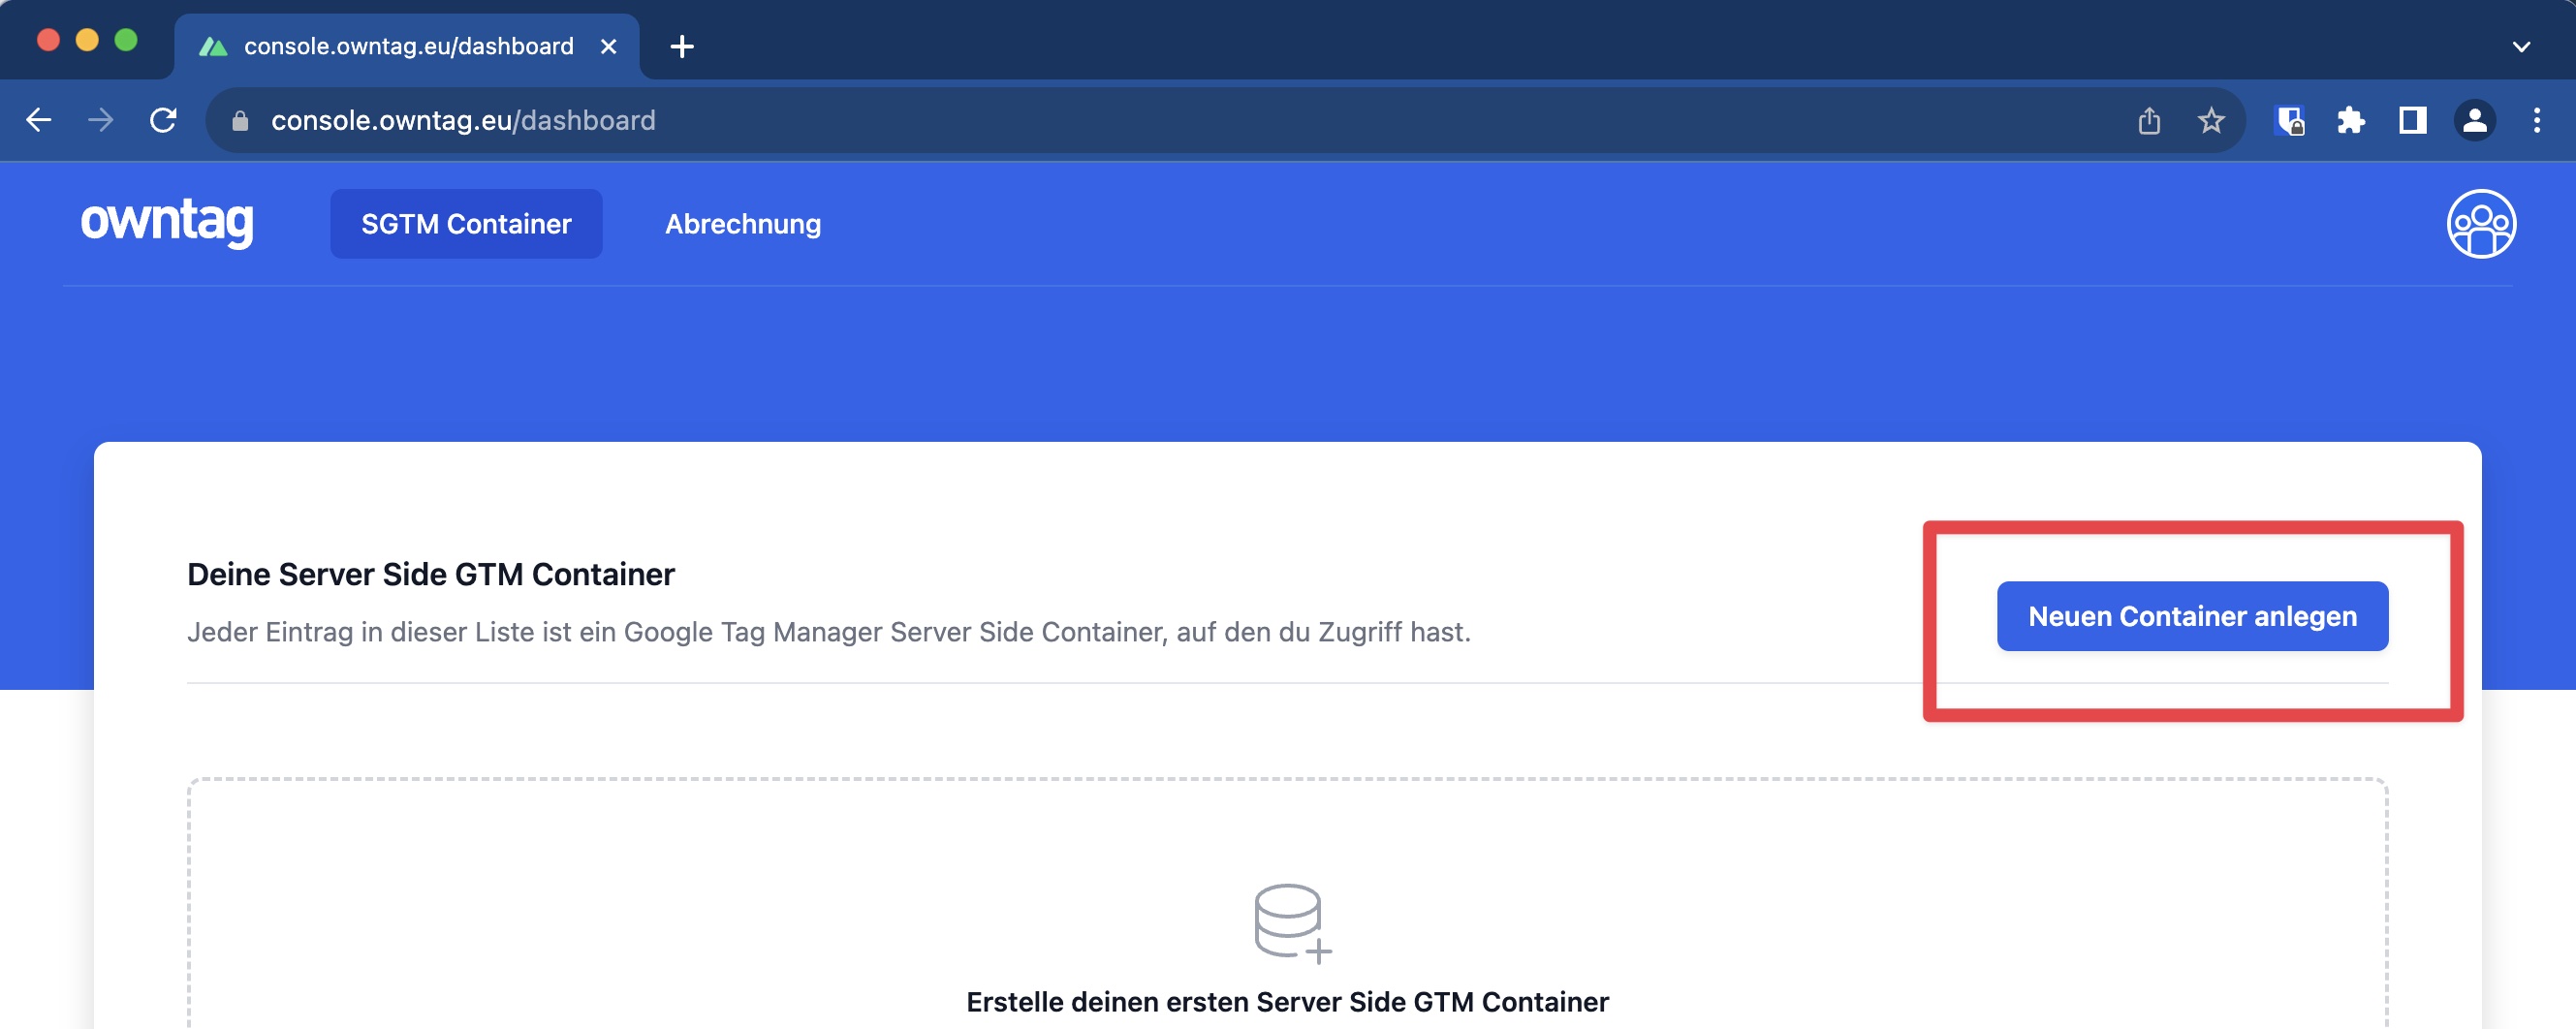 Bildschirmfoto der &lsquo;owntag&rsquo; Web-Oberfläche mit einem blauen Kopfbereich, der die Optionen &lsquo;SGTM Container&rsquo; und &lsquo;Abrechnung&rsquo; zeigt. Im Hauptteil der Seite steht &lsquo;Deine Server Side GTM Container&rsquo; und darunter der Hinweis, dass jeder Eintrag in der Liste ein Google Tag Manager Server Side Container ist, auf den du Zugriff hast. Ein roter Rahmen hebt den blauen Button &lsquo;Neuen Container anlegen&rsquo; hervor, der sich in der unteren rechten Ecke befindet.